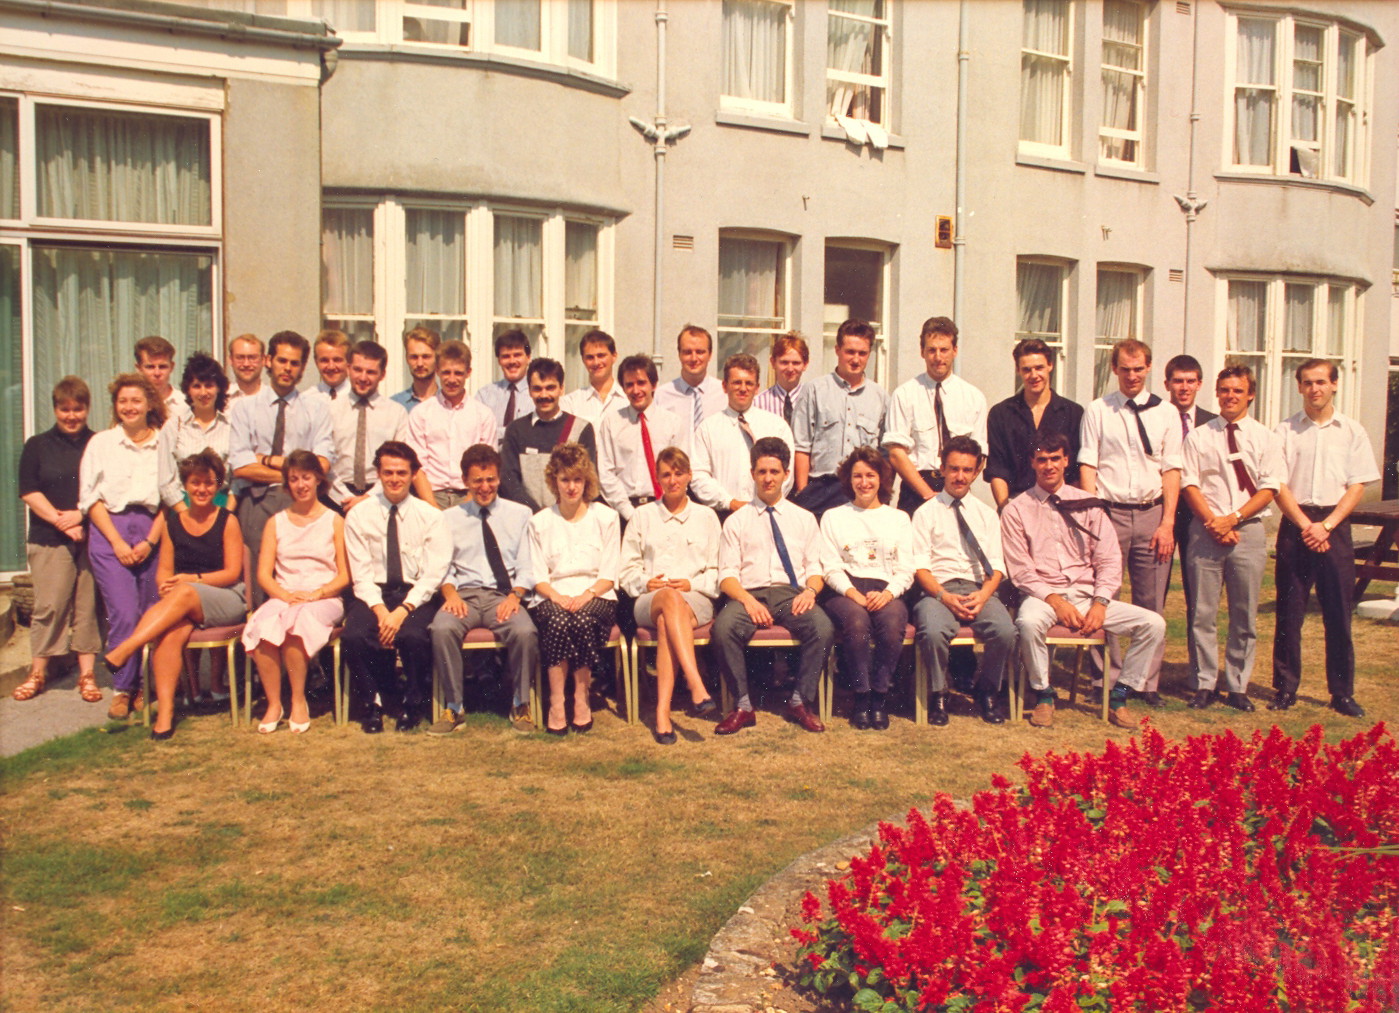 1989-08-23. 72 Course. Heathlands Hotel, Bournemouth